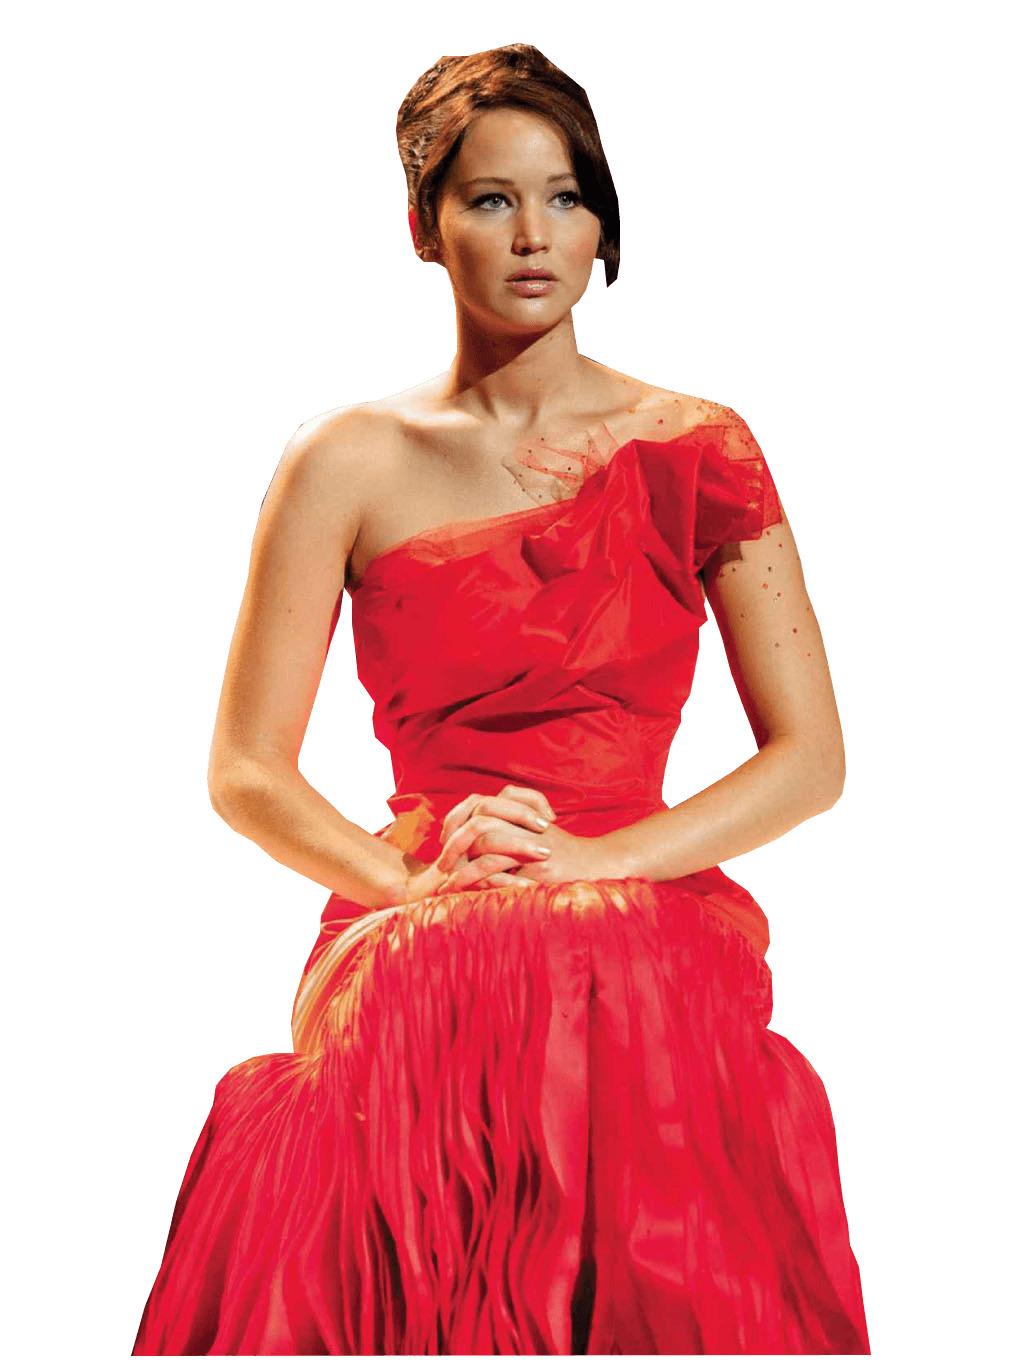 Jennifer Lawrence Red Dress png transparent